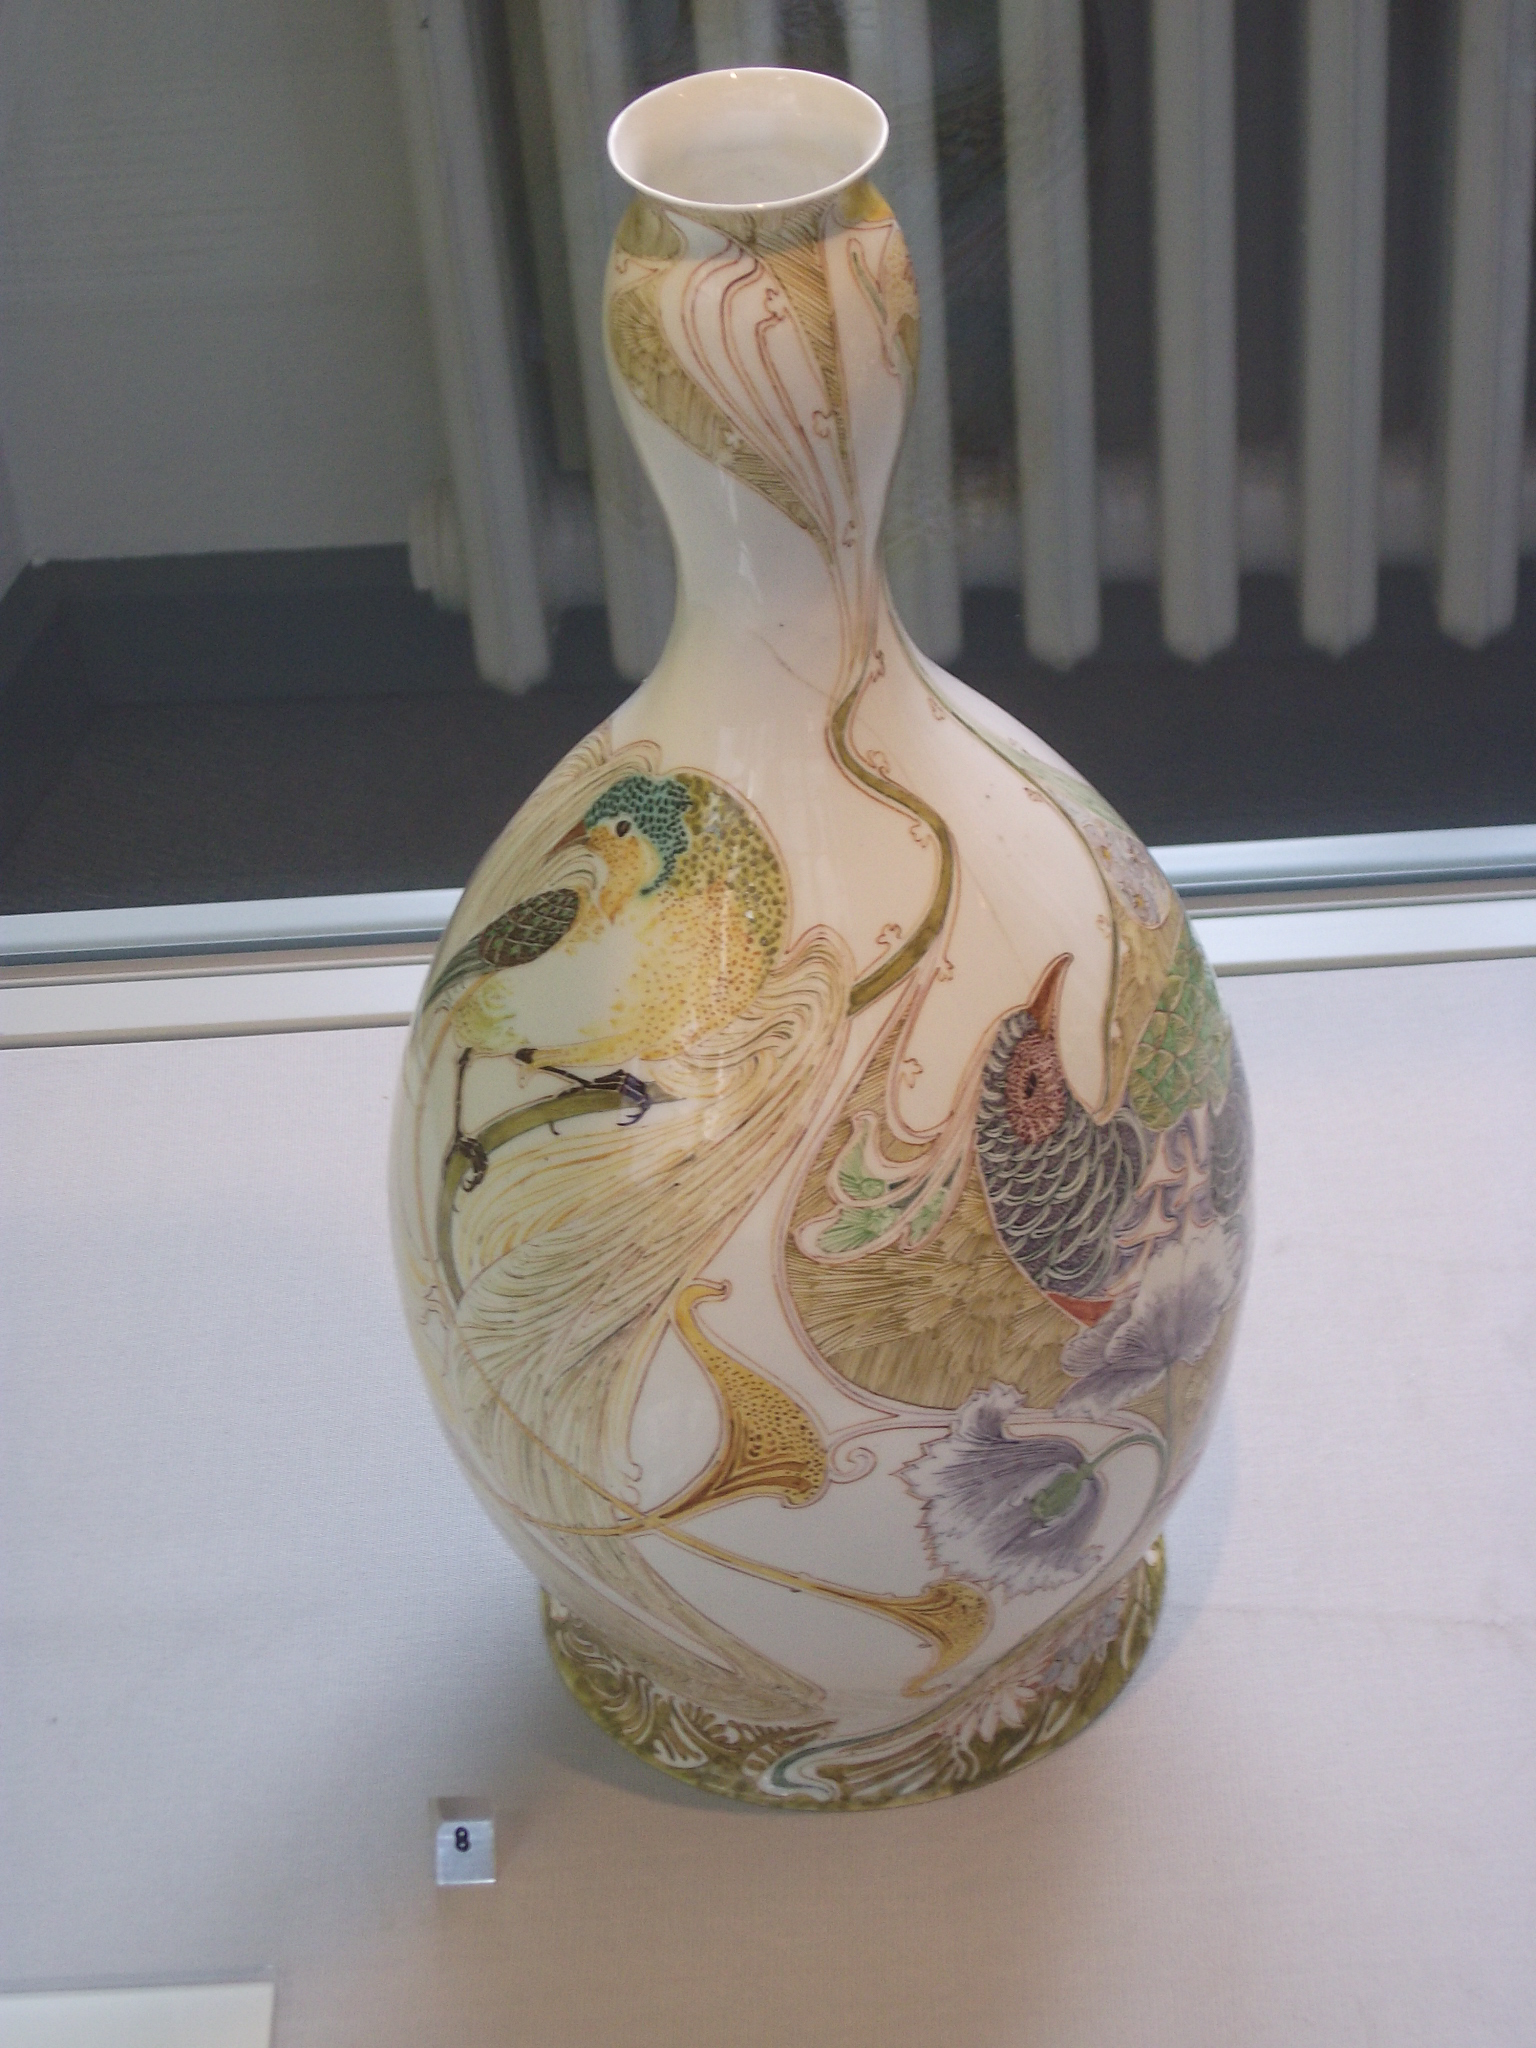 Keramik des 20. Jahrhunderts: Kalebasse mit Pfauenmuster von W. P. Harting 1900